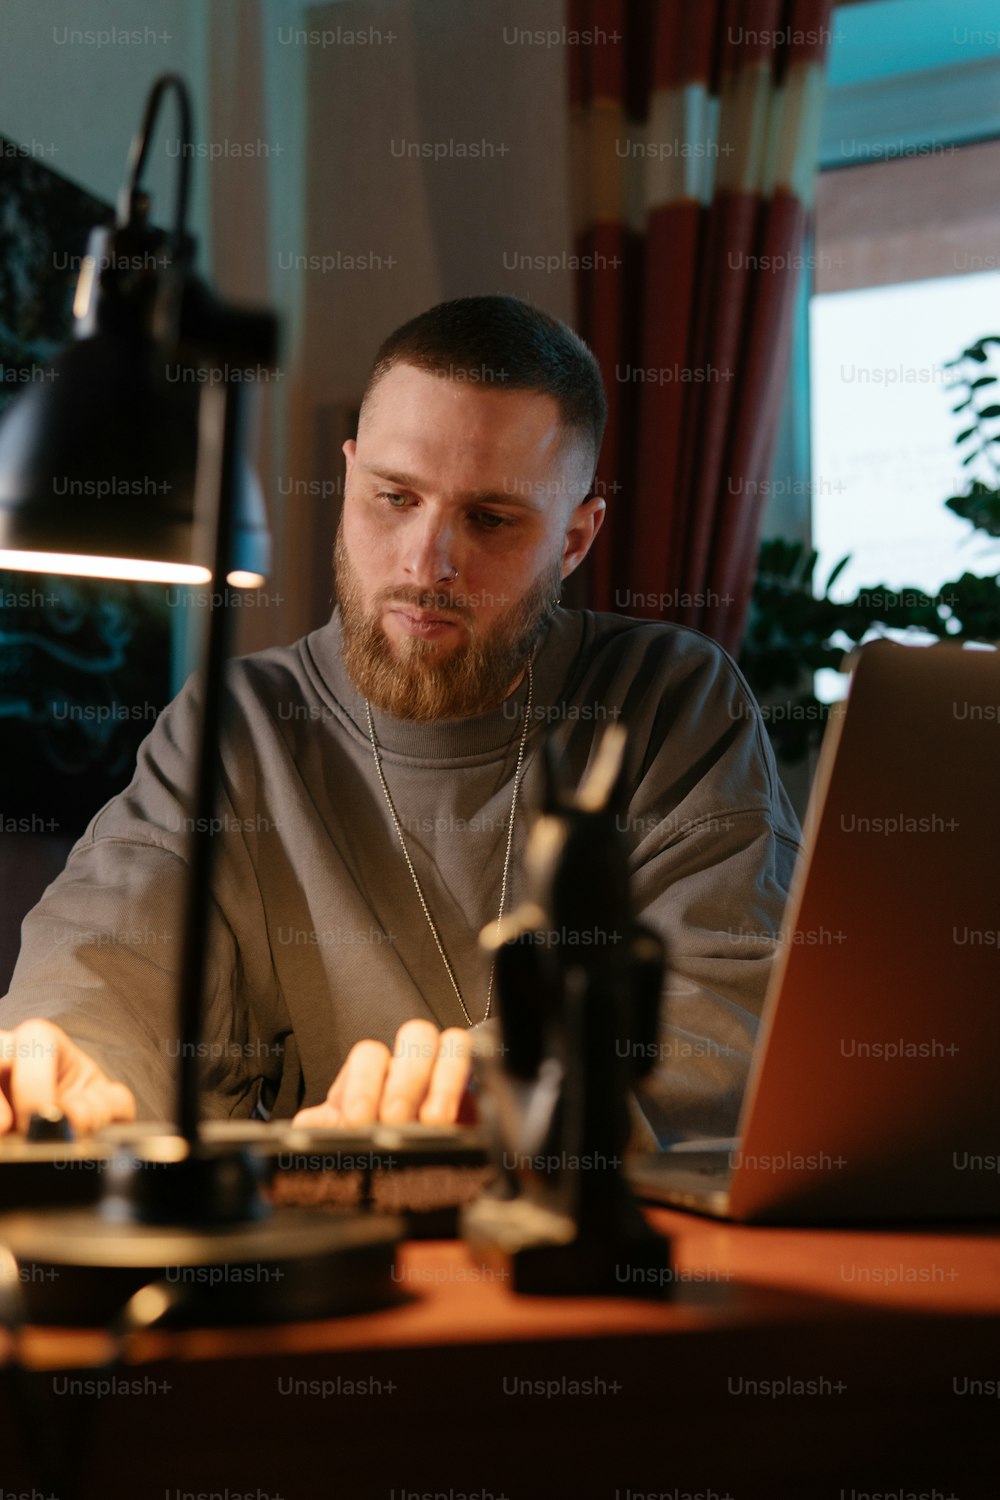 Un uomo seduto davanti a un computer portatile